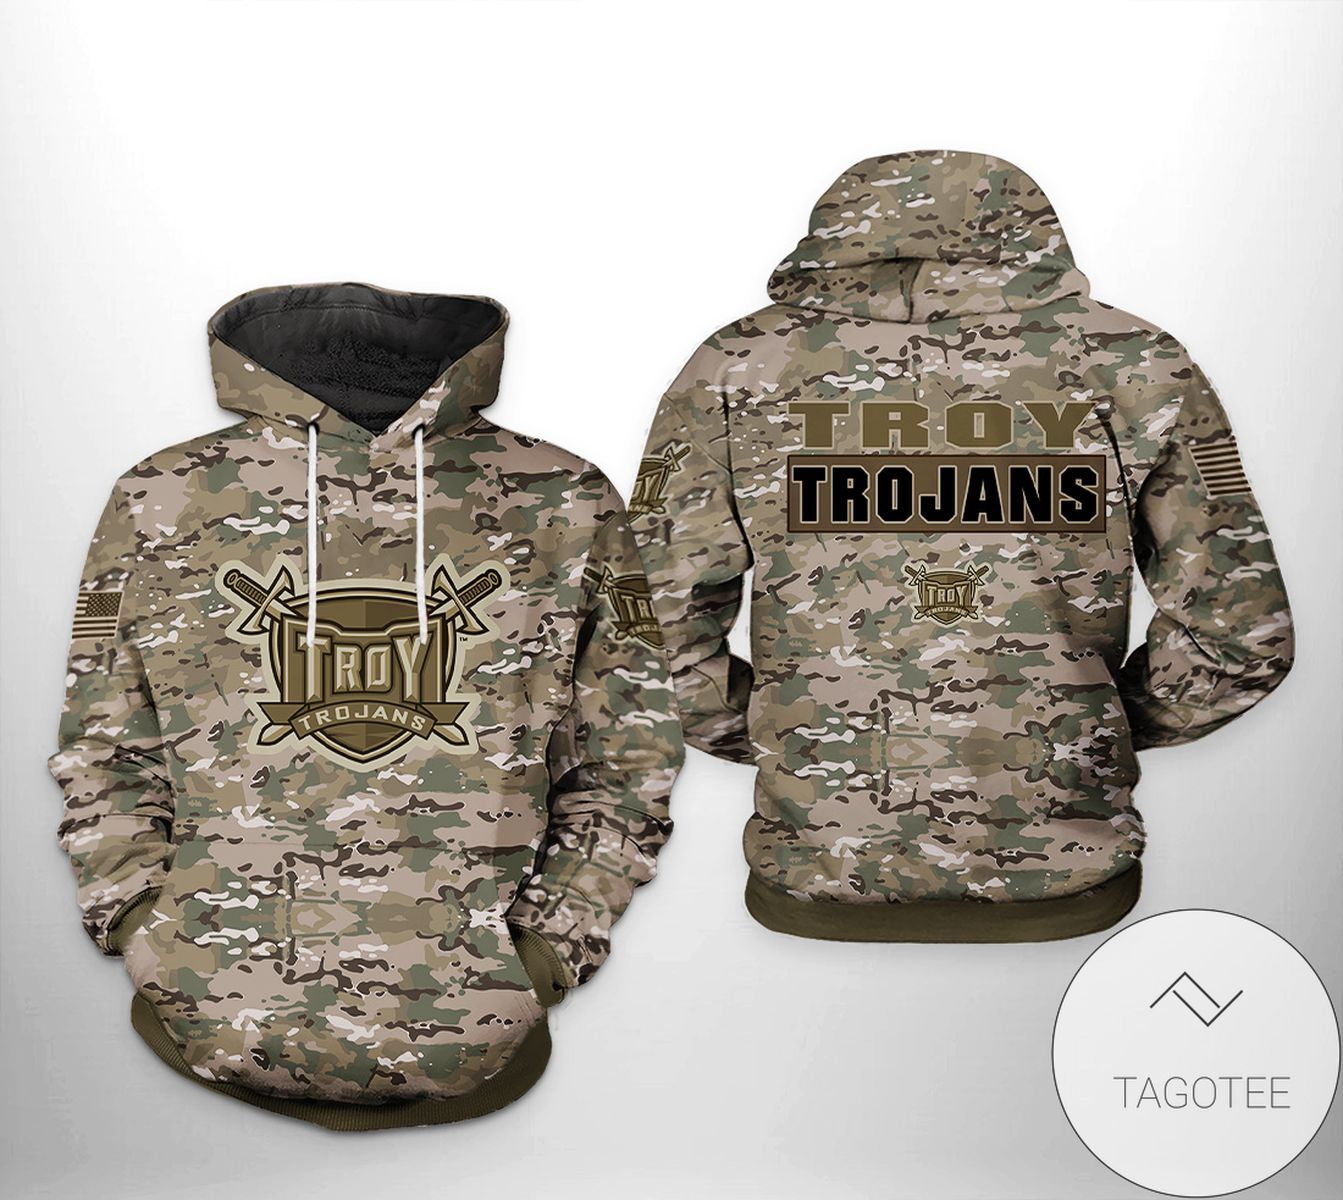 Troy Trojans NCAA Camo Veteran 3D Printed Hoodie Zipper Hooded Jacket